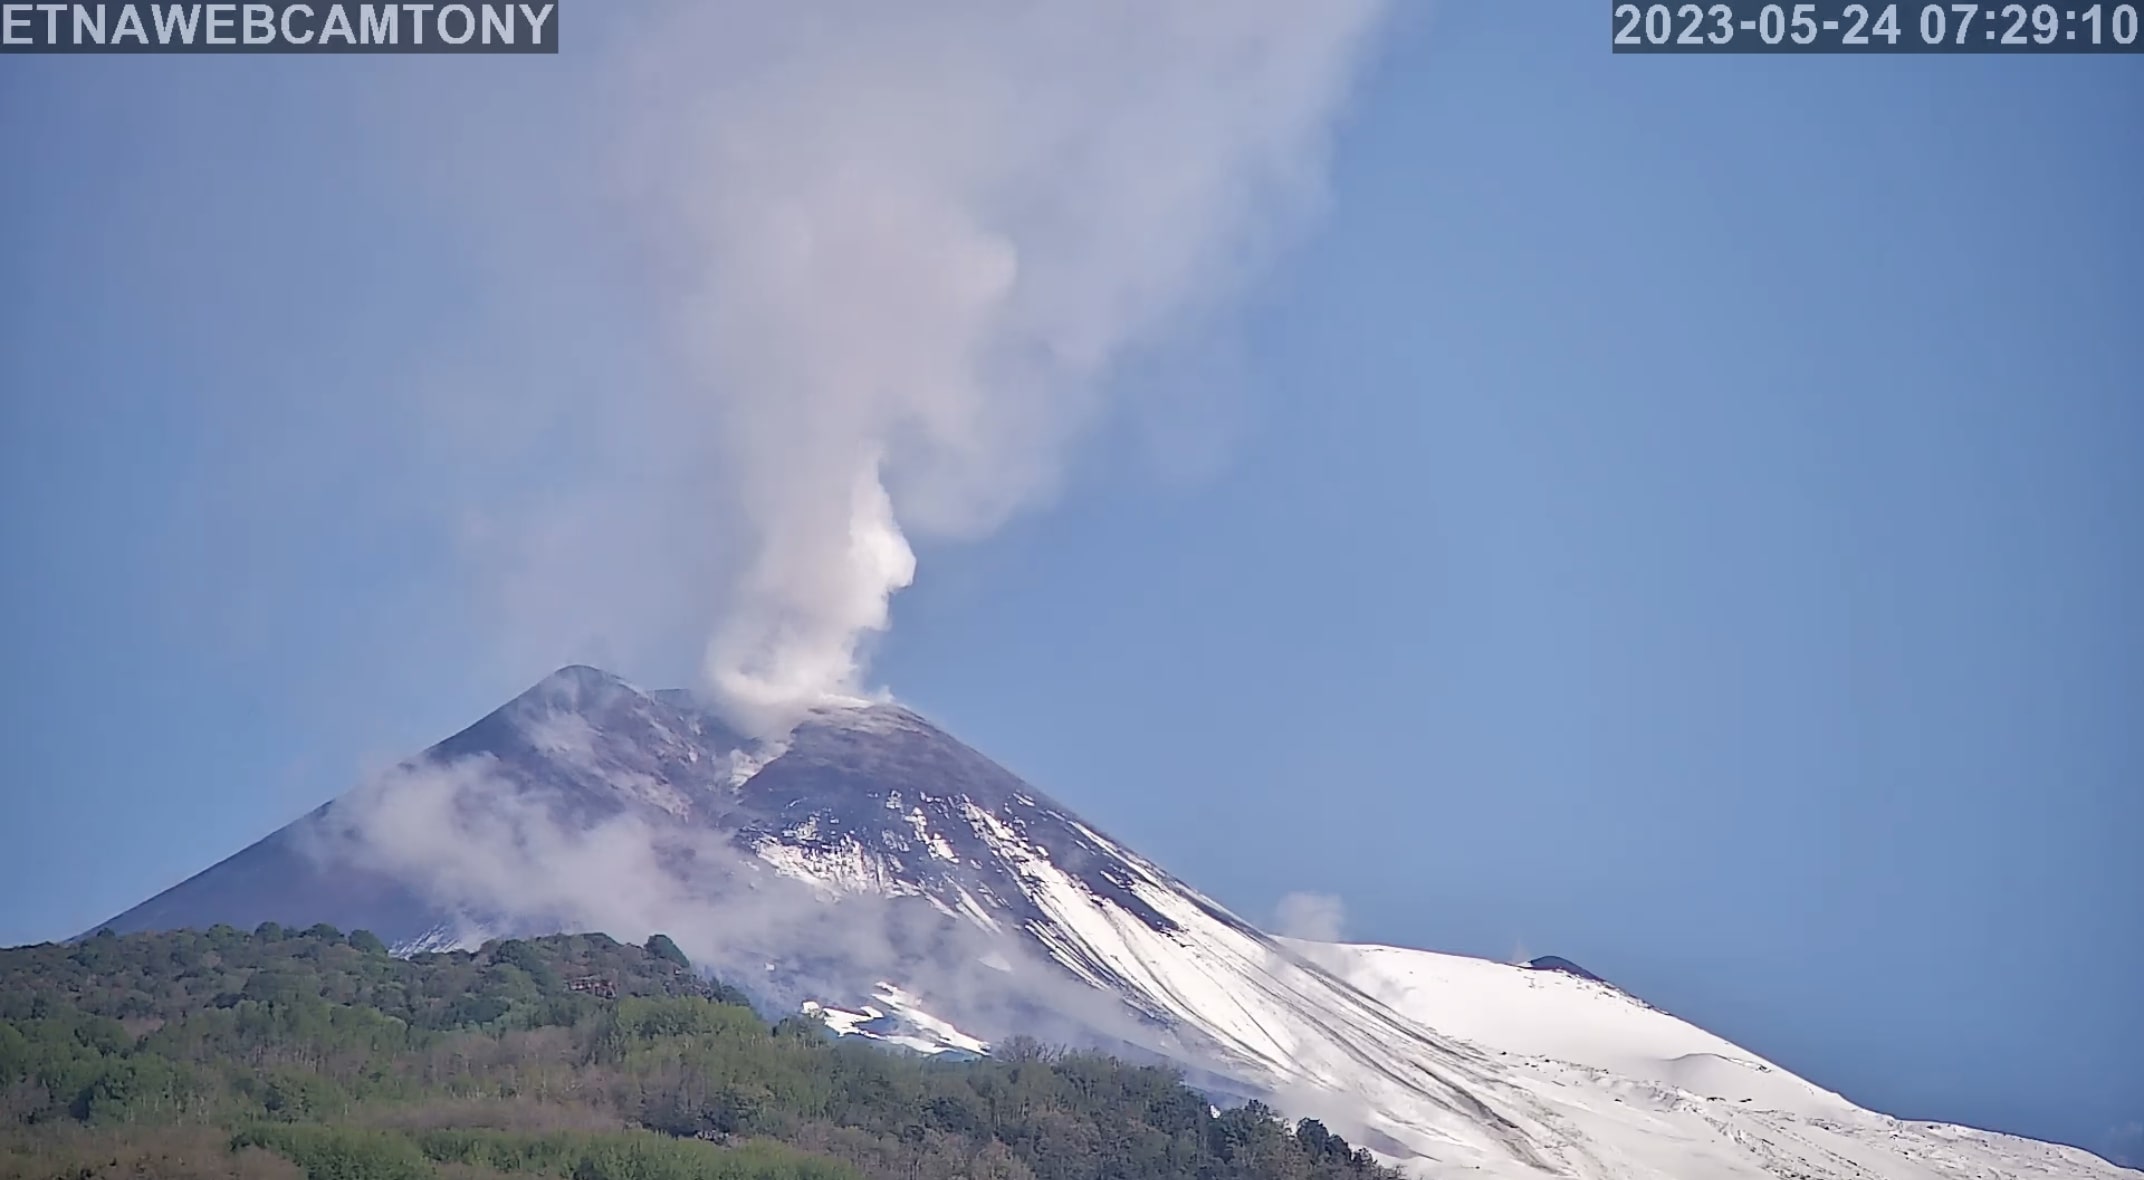 L’Etna non è più in eruzione, conclusa l’attività stromboliana